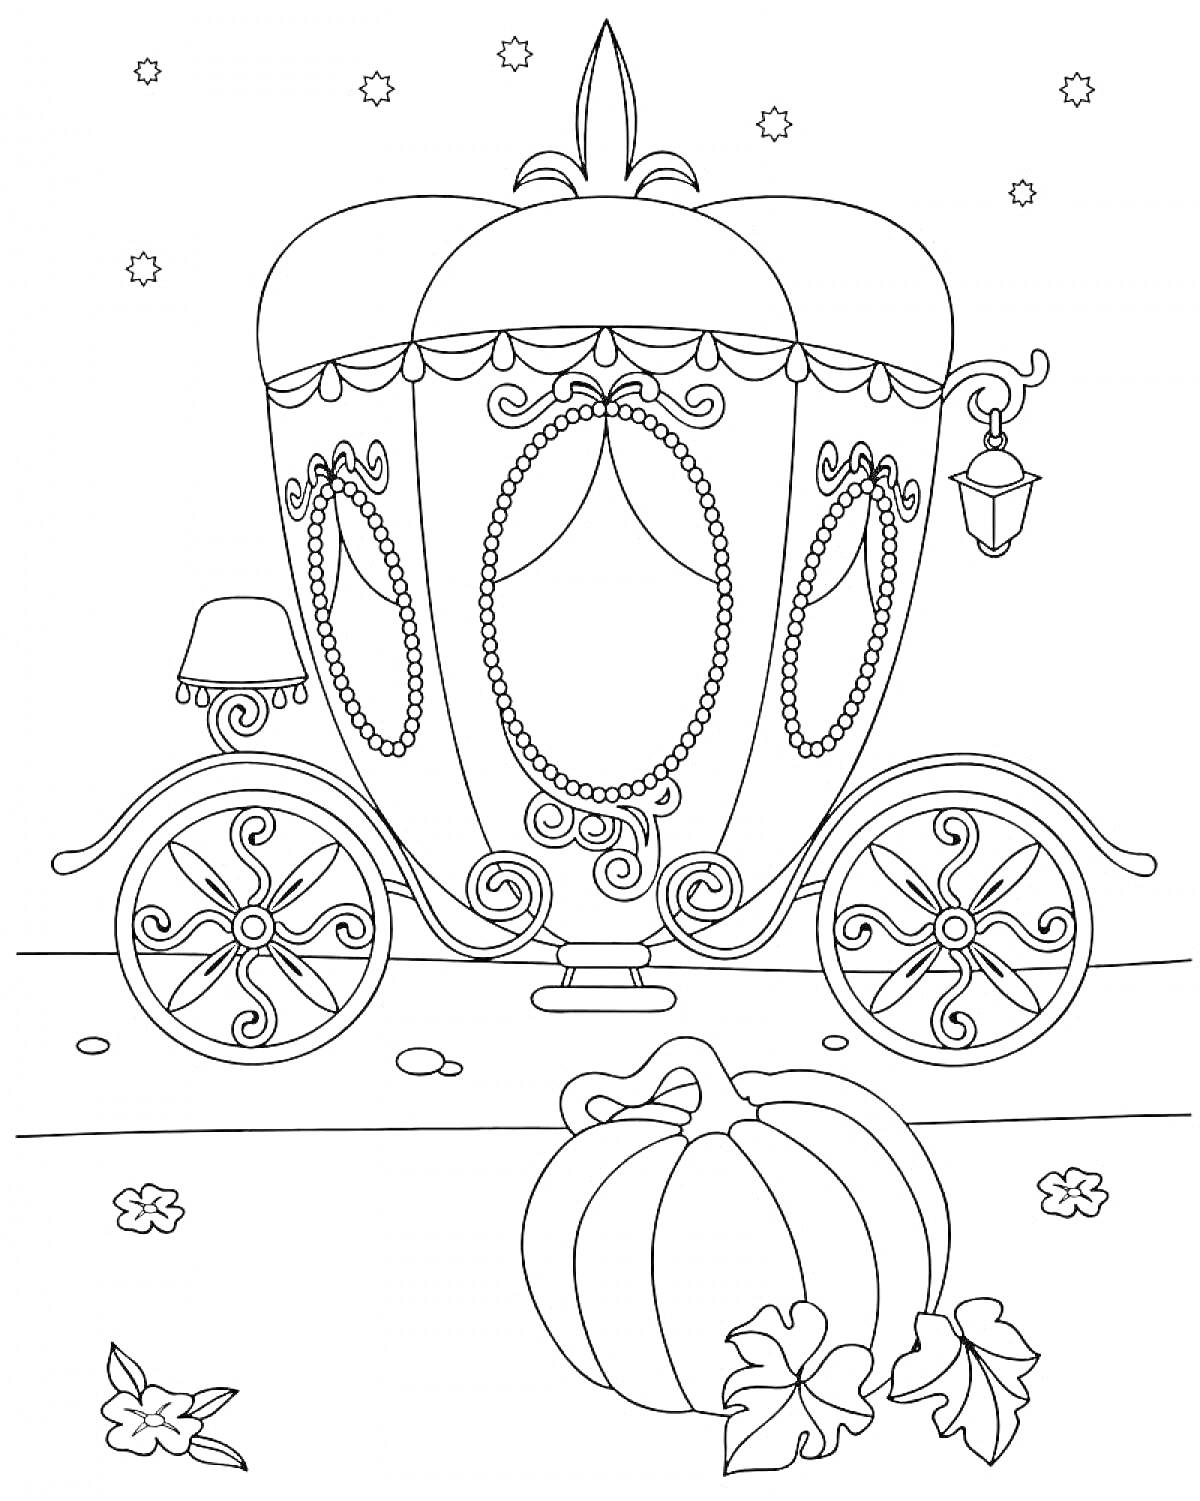 Раскраска Королевская карета, украшенная завитками и лампой, с большим колесом, окруженная падающими звёздами и осенними листьями, со спелой тыквой на переднем плане.